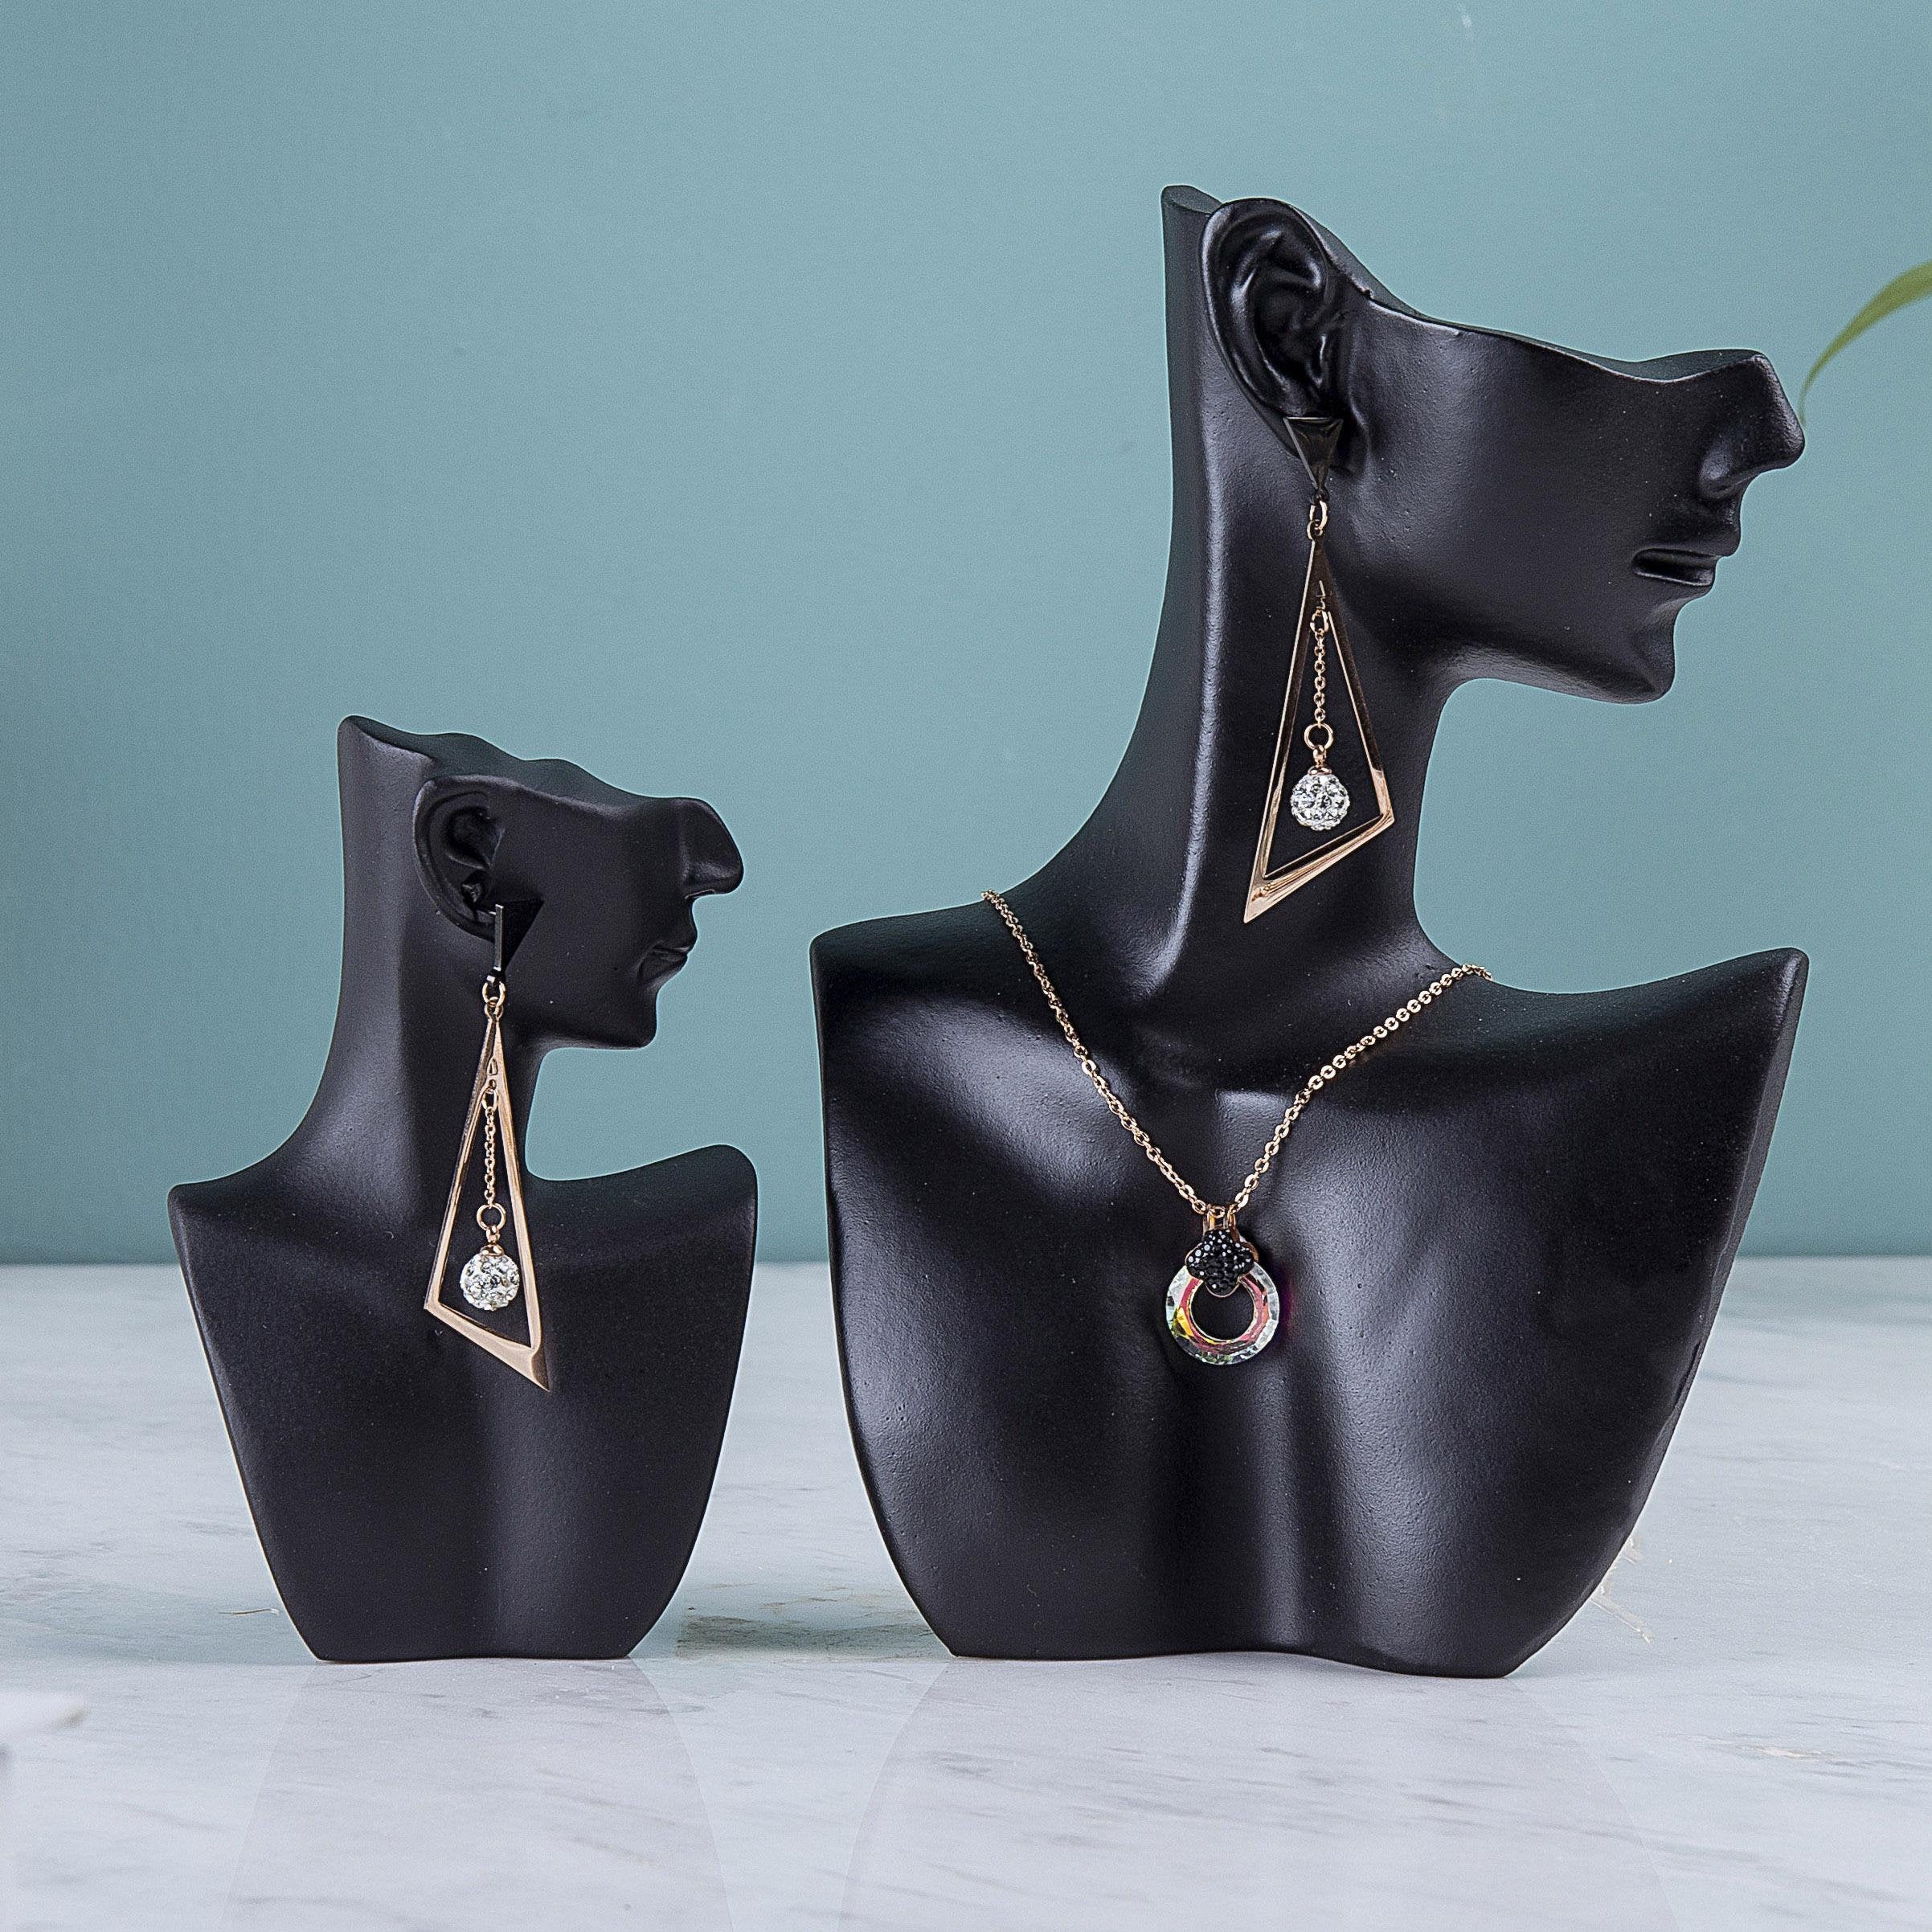 Earring Display Tutorial | Diy jewelry display, Earring display, Jewellery  display